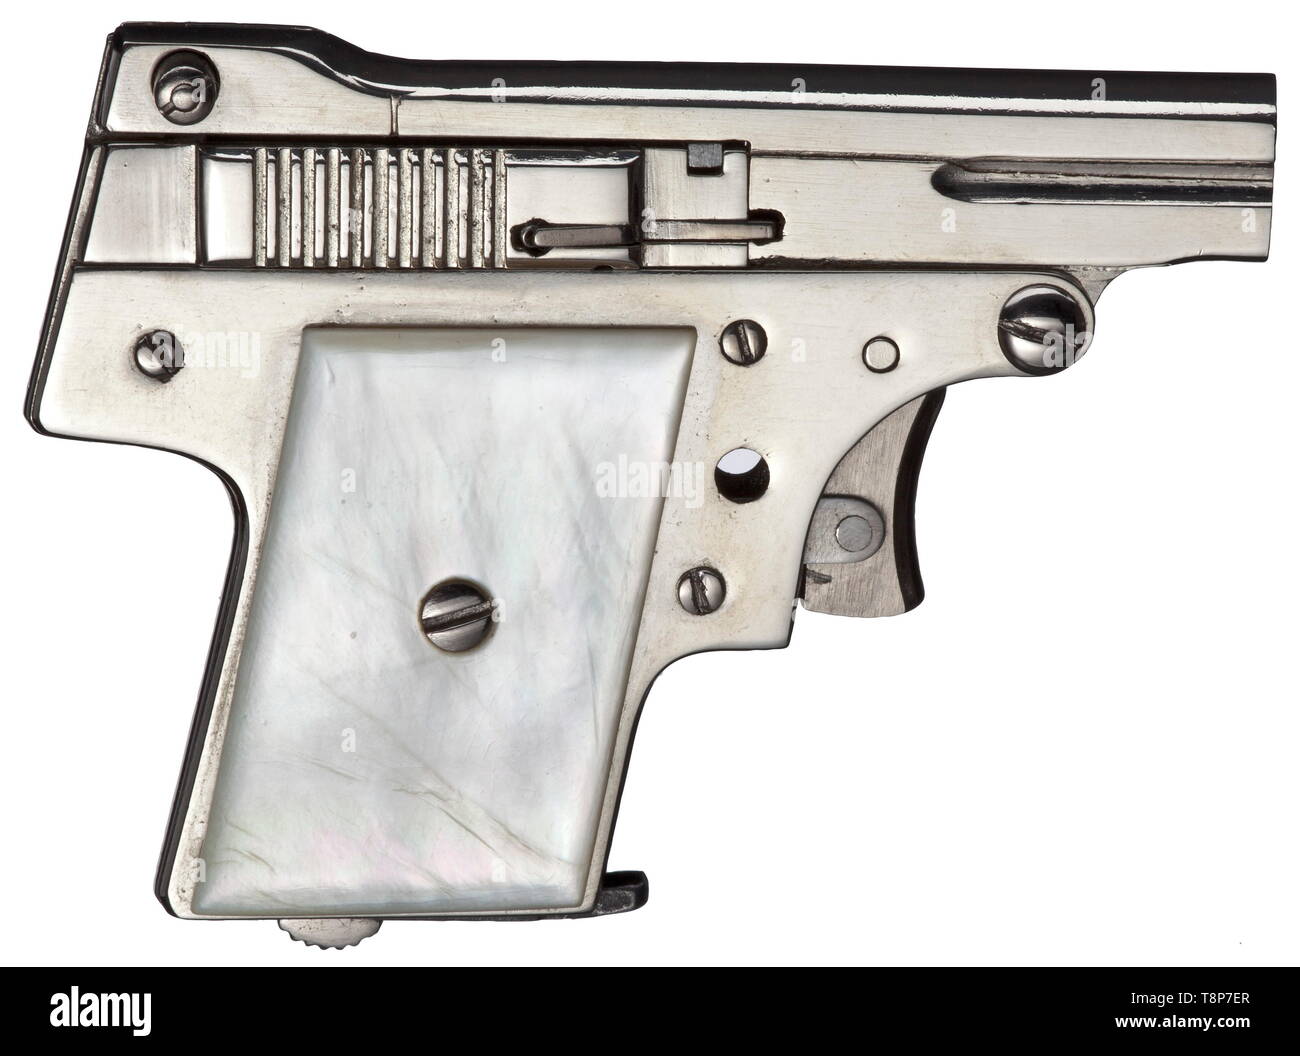 Una pistola del calibre 3 mm Kolibri Kolibri, S/N, sin ninguna prueba de  marca e inscripción. Orificio liso, barril longitud 30 mm, 69 mm de  longitud total. Seis disparos. Todas las partes